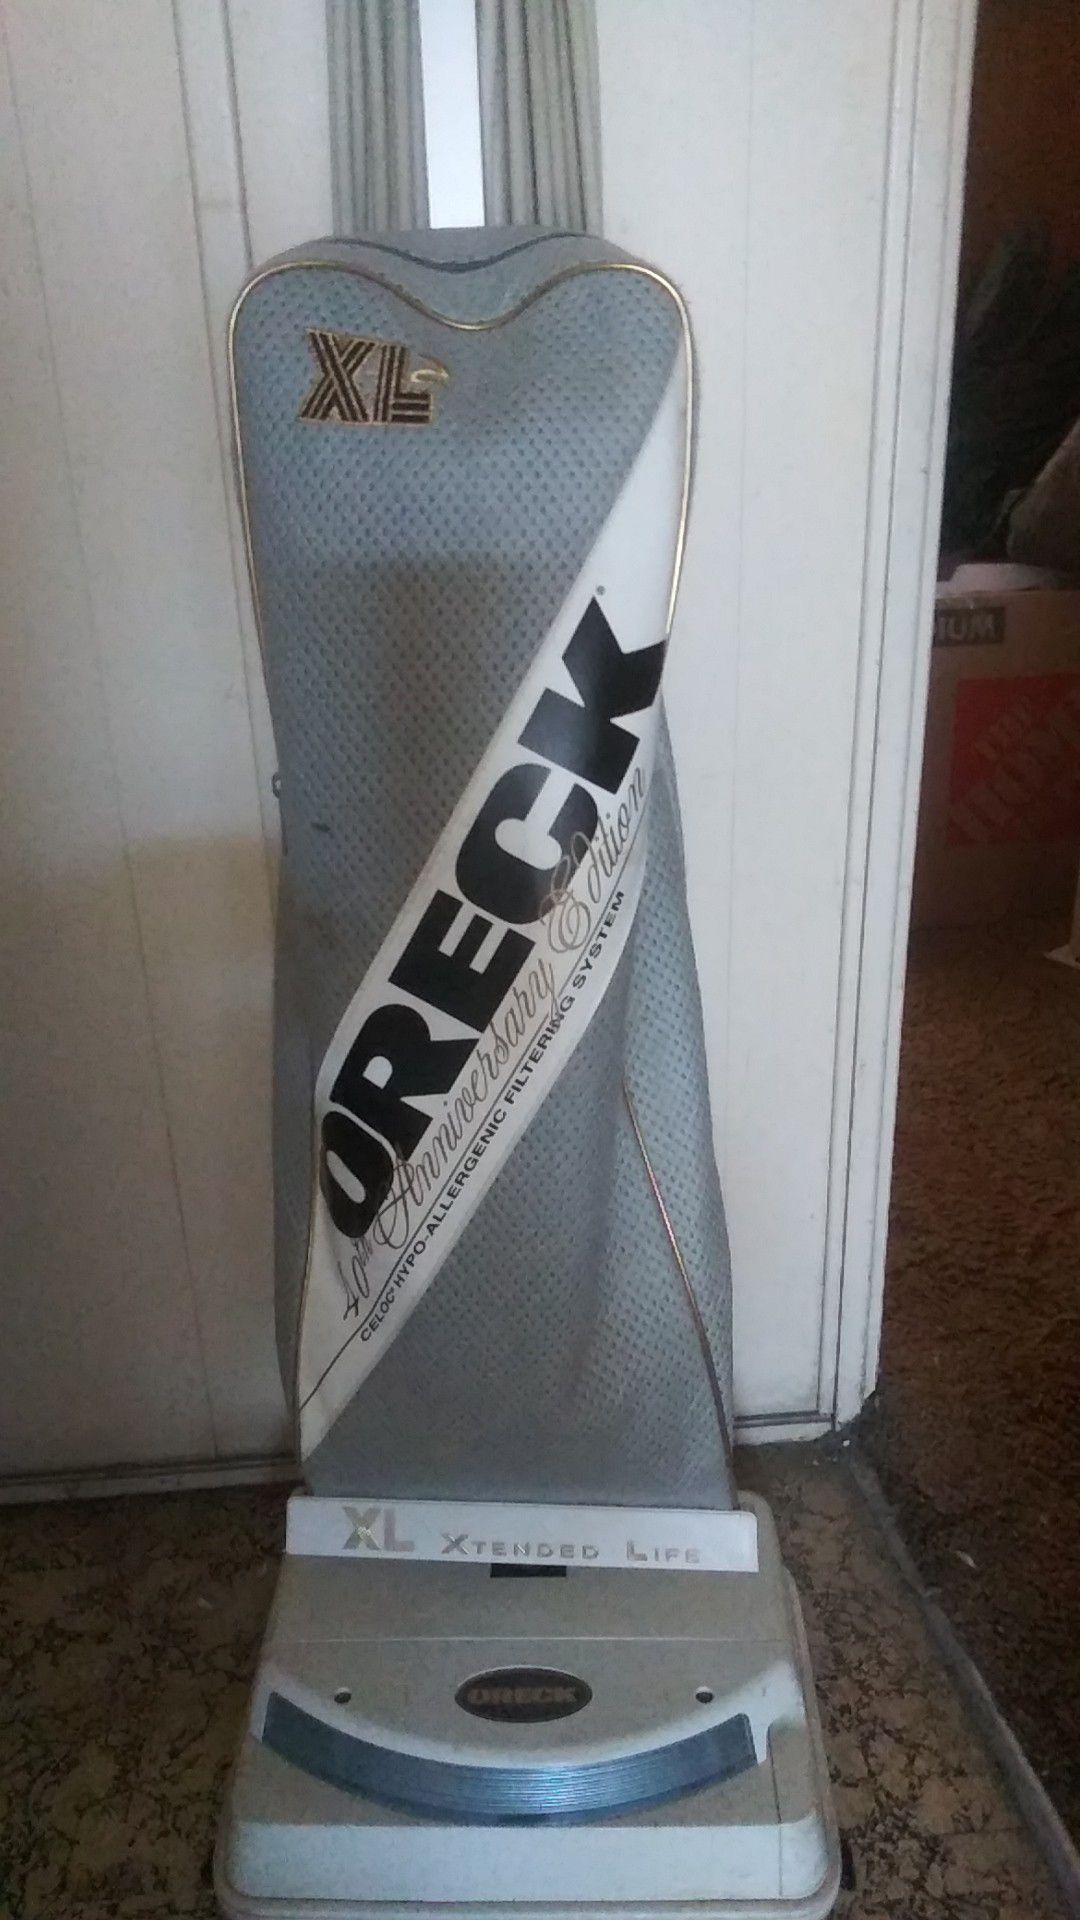 An Oreck Oreck vacuum